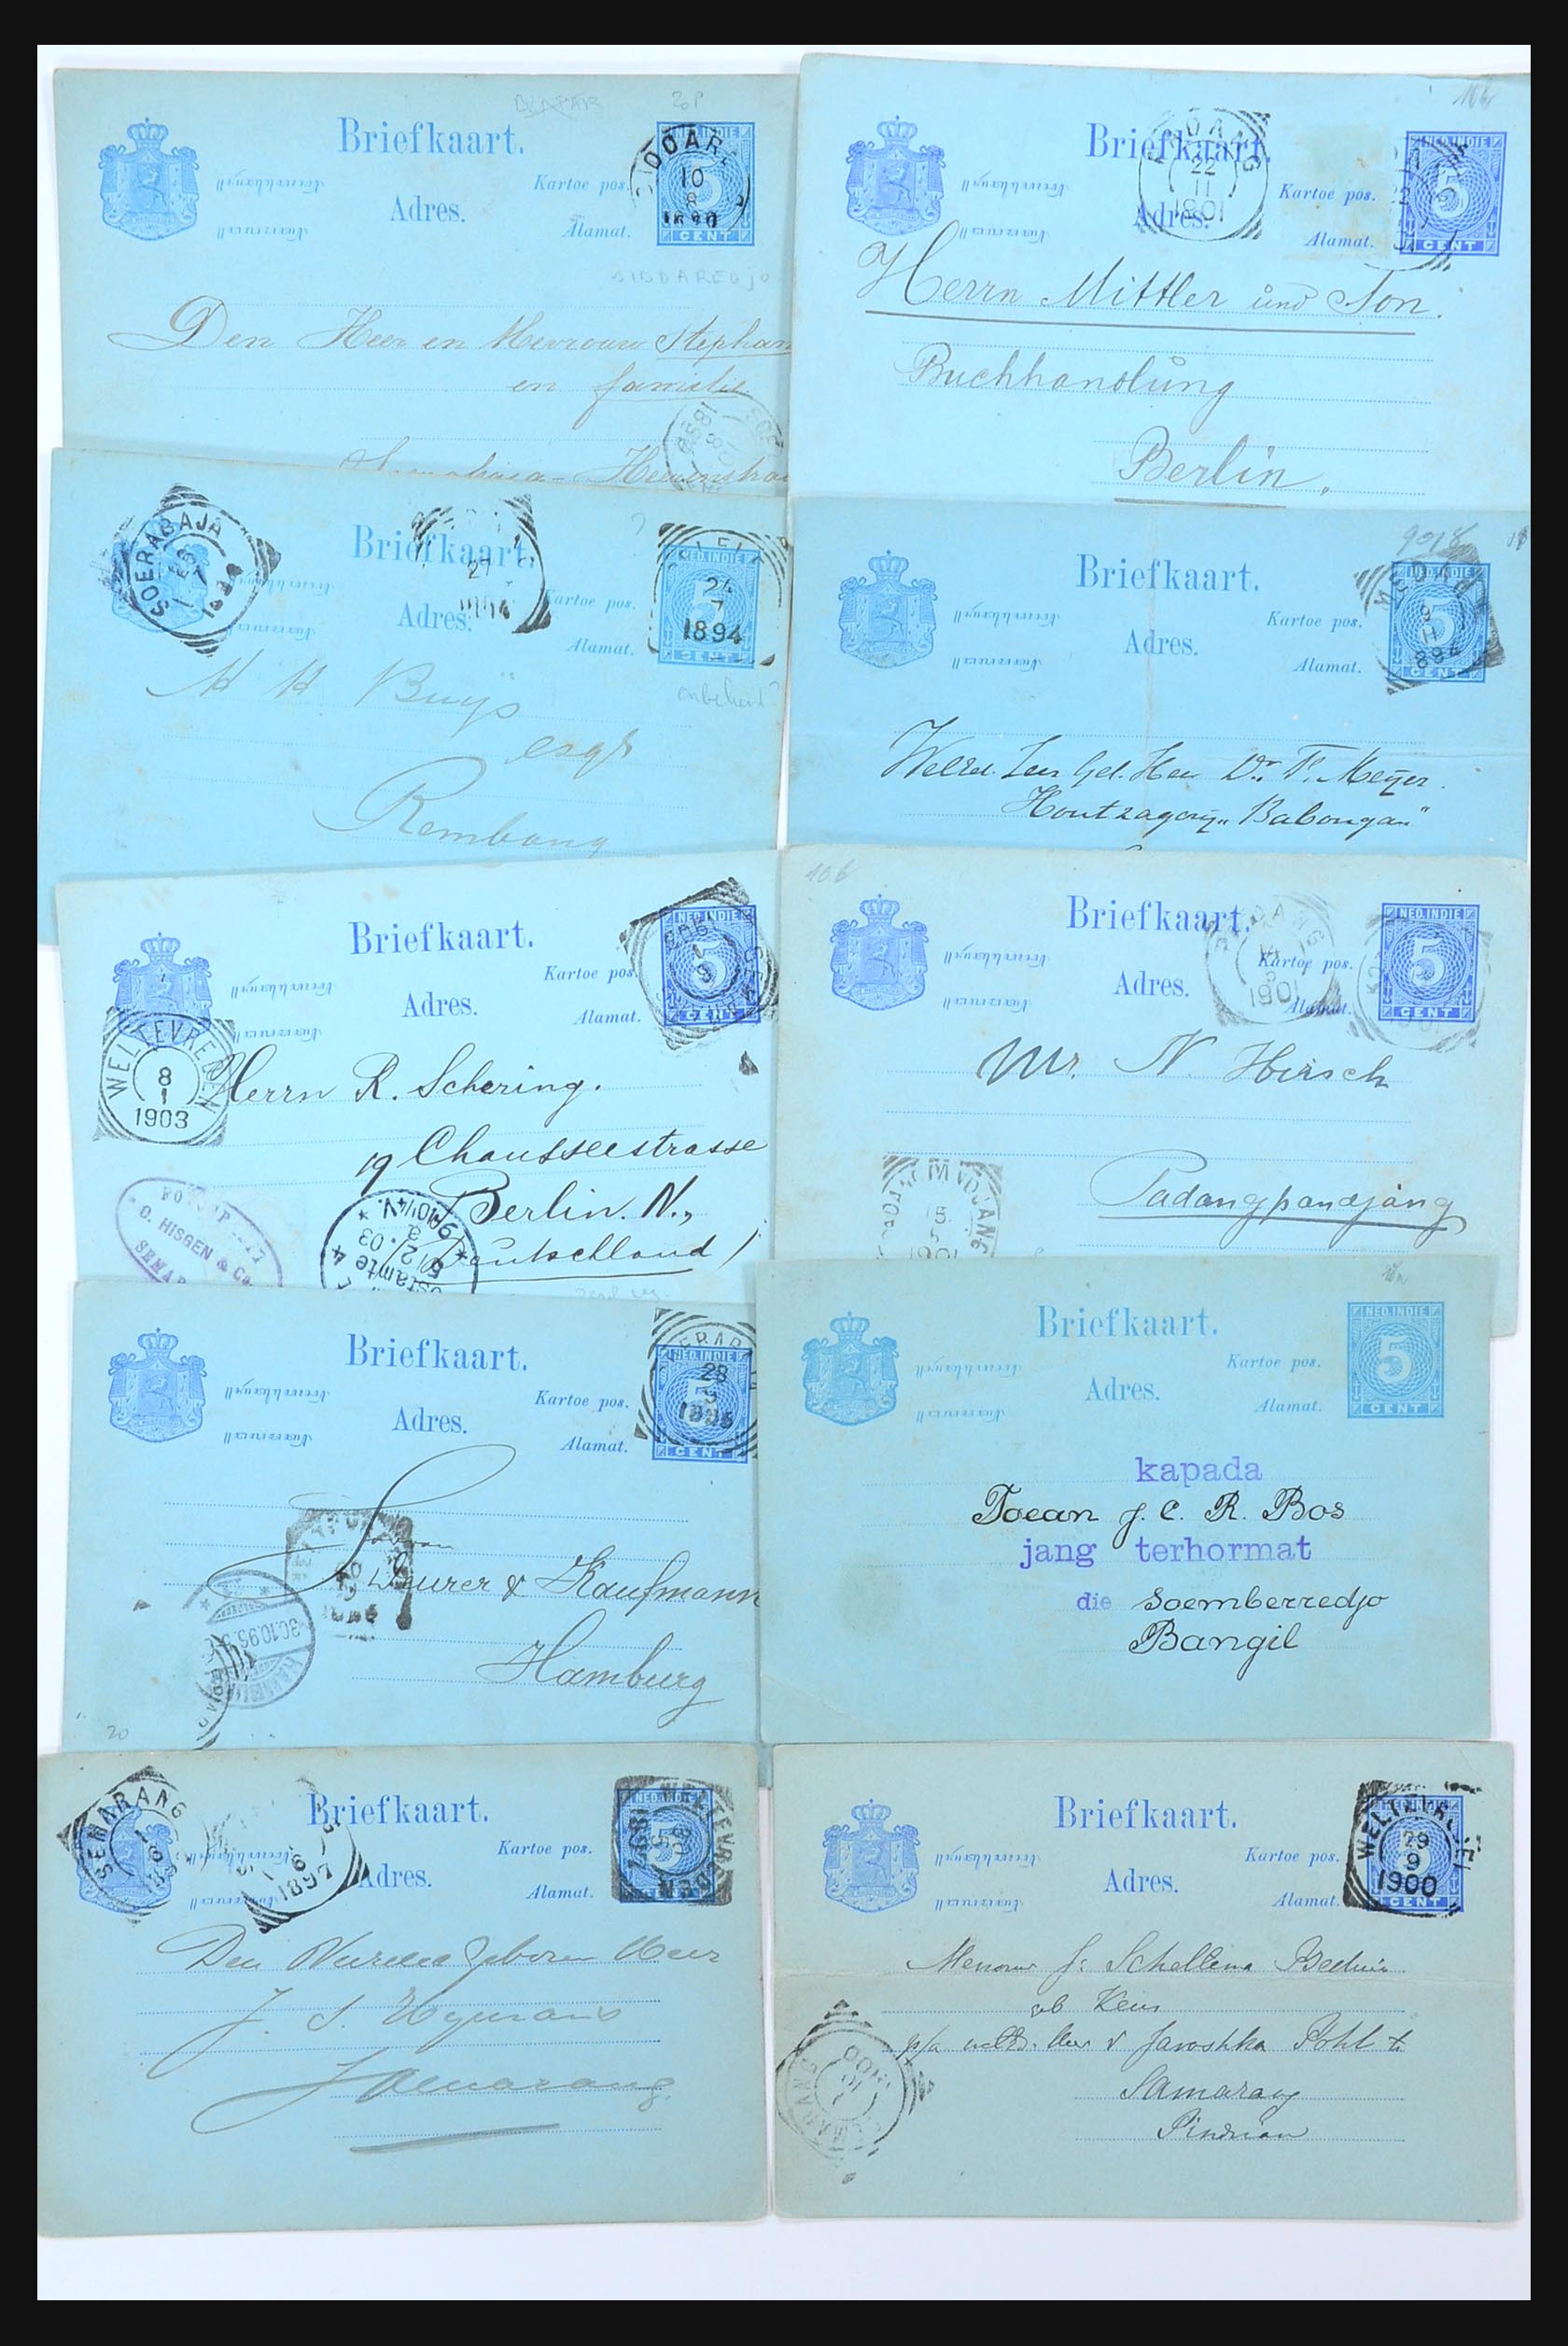 31361 010 - 31361 Nederlands Indië brieven 1880-1950.